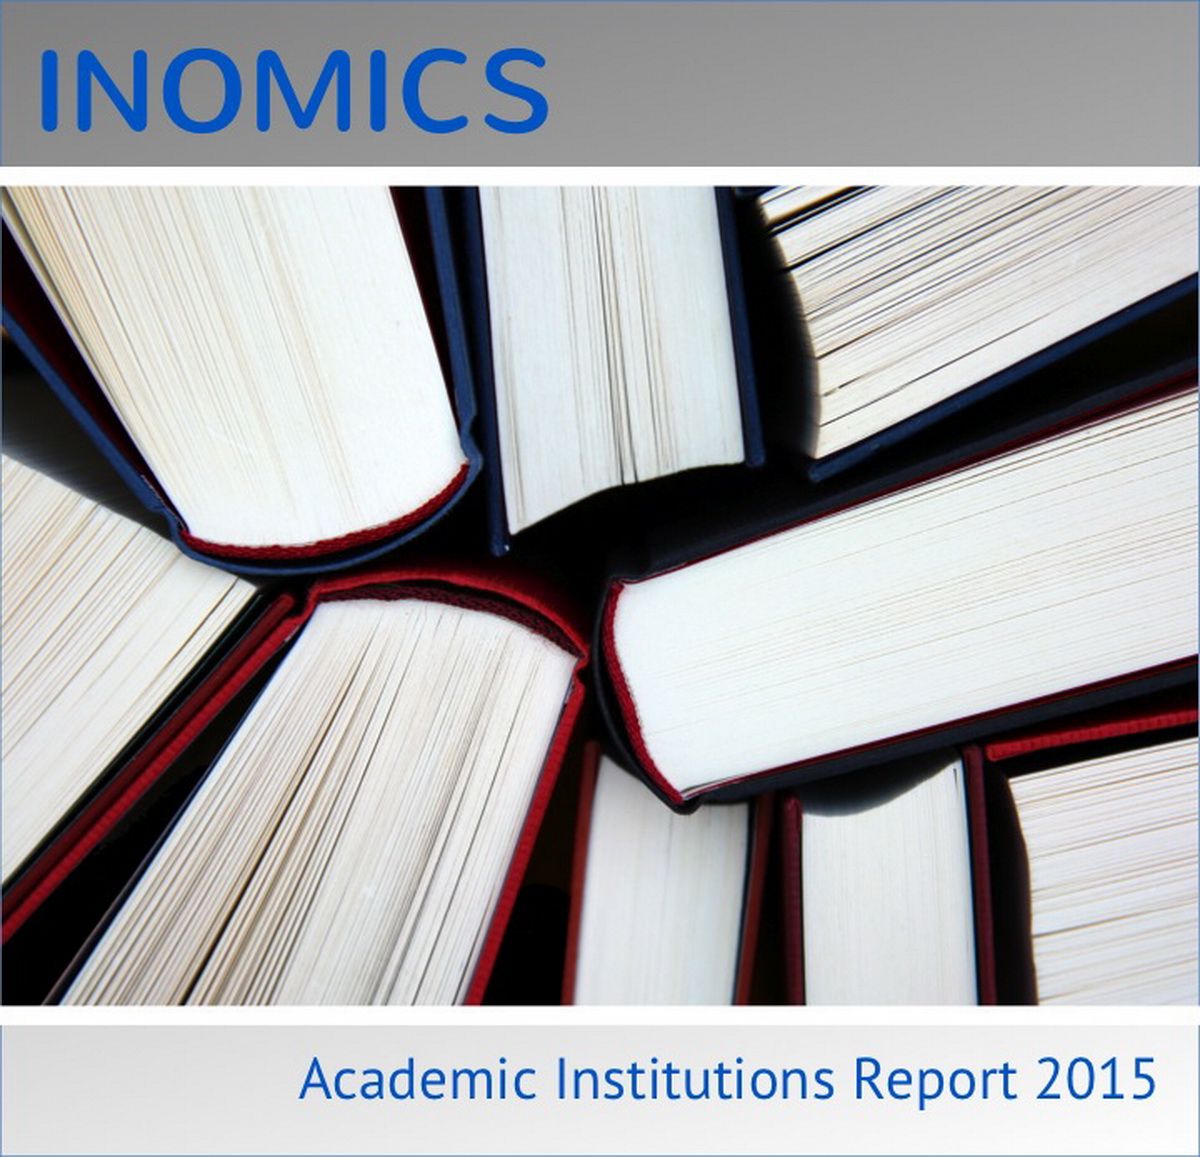 Academic Institutions Report 2015